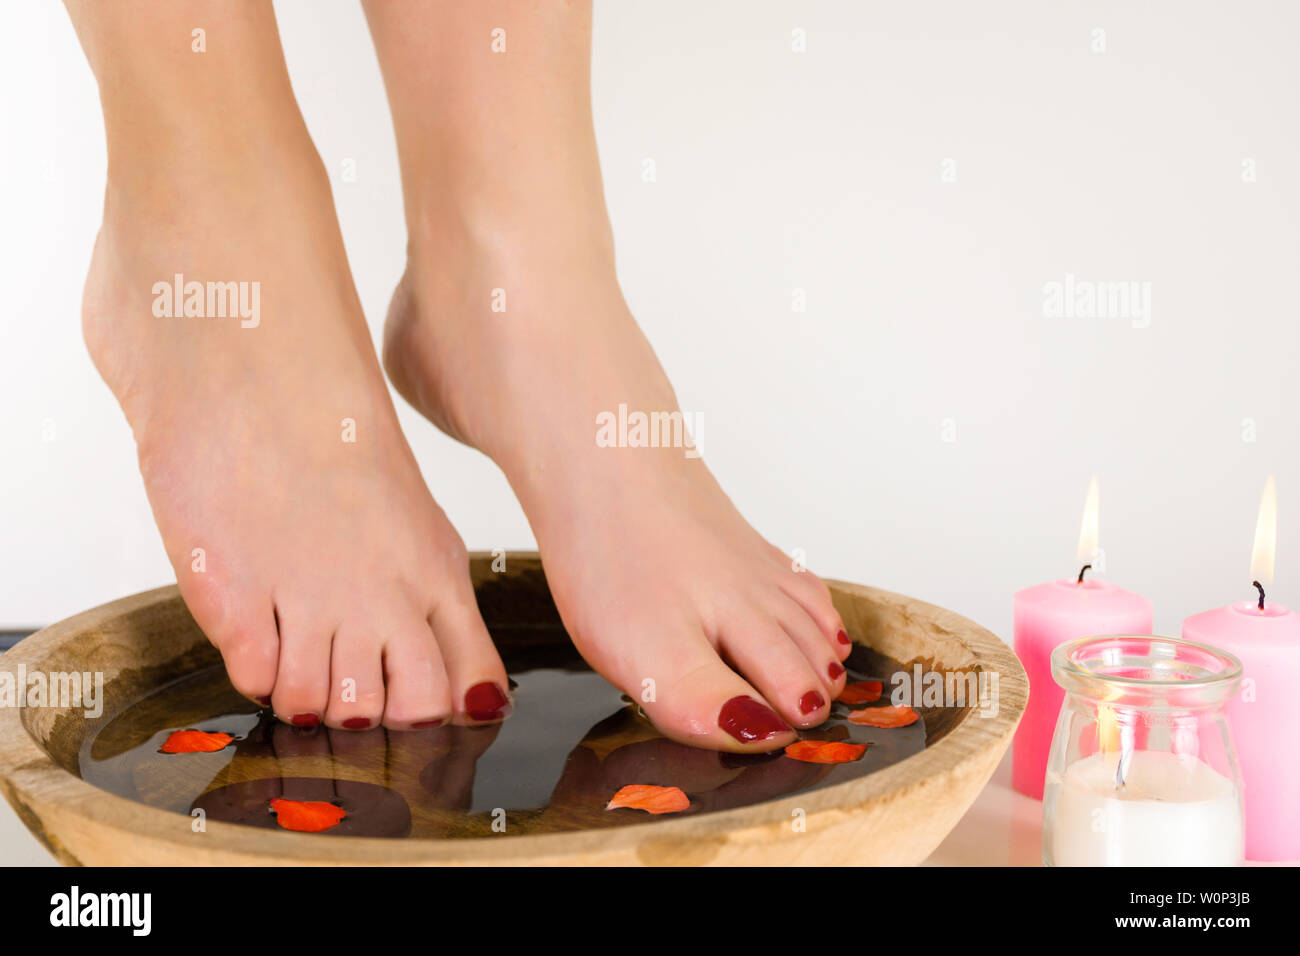 Weibliche Füße in eine Schüssel mit Wasser und Holz rosa Kerzen brennen auf dem Fußboden, weißen Hintergrund. Burgund Farbe auf den Nägeln Pediküre. Nahaufnahme Stockfoto